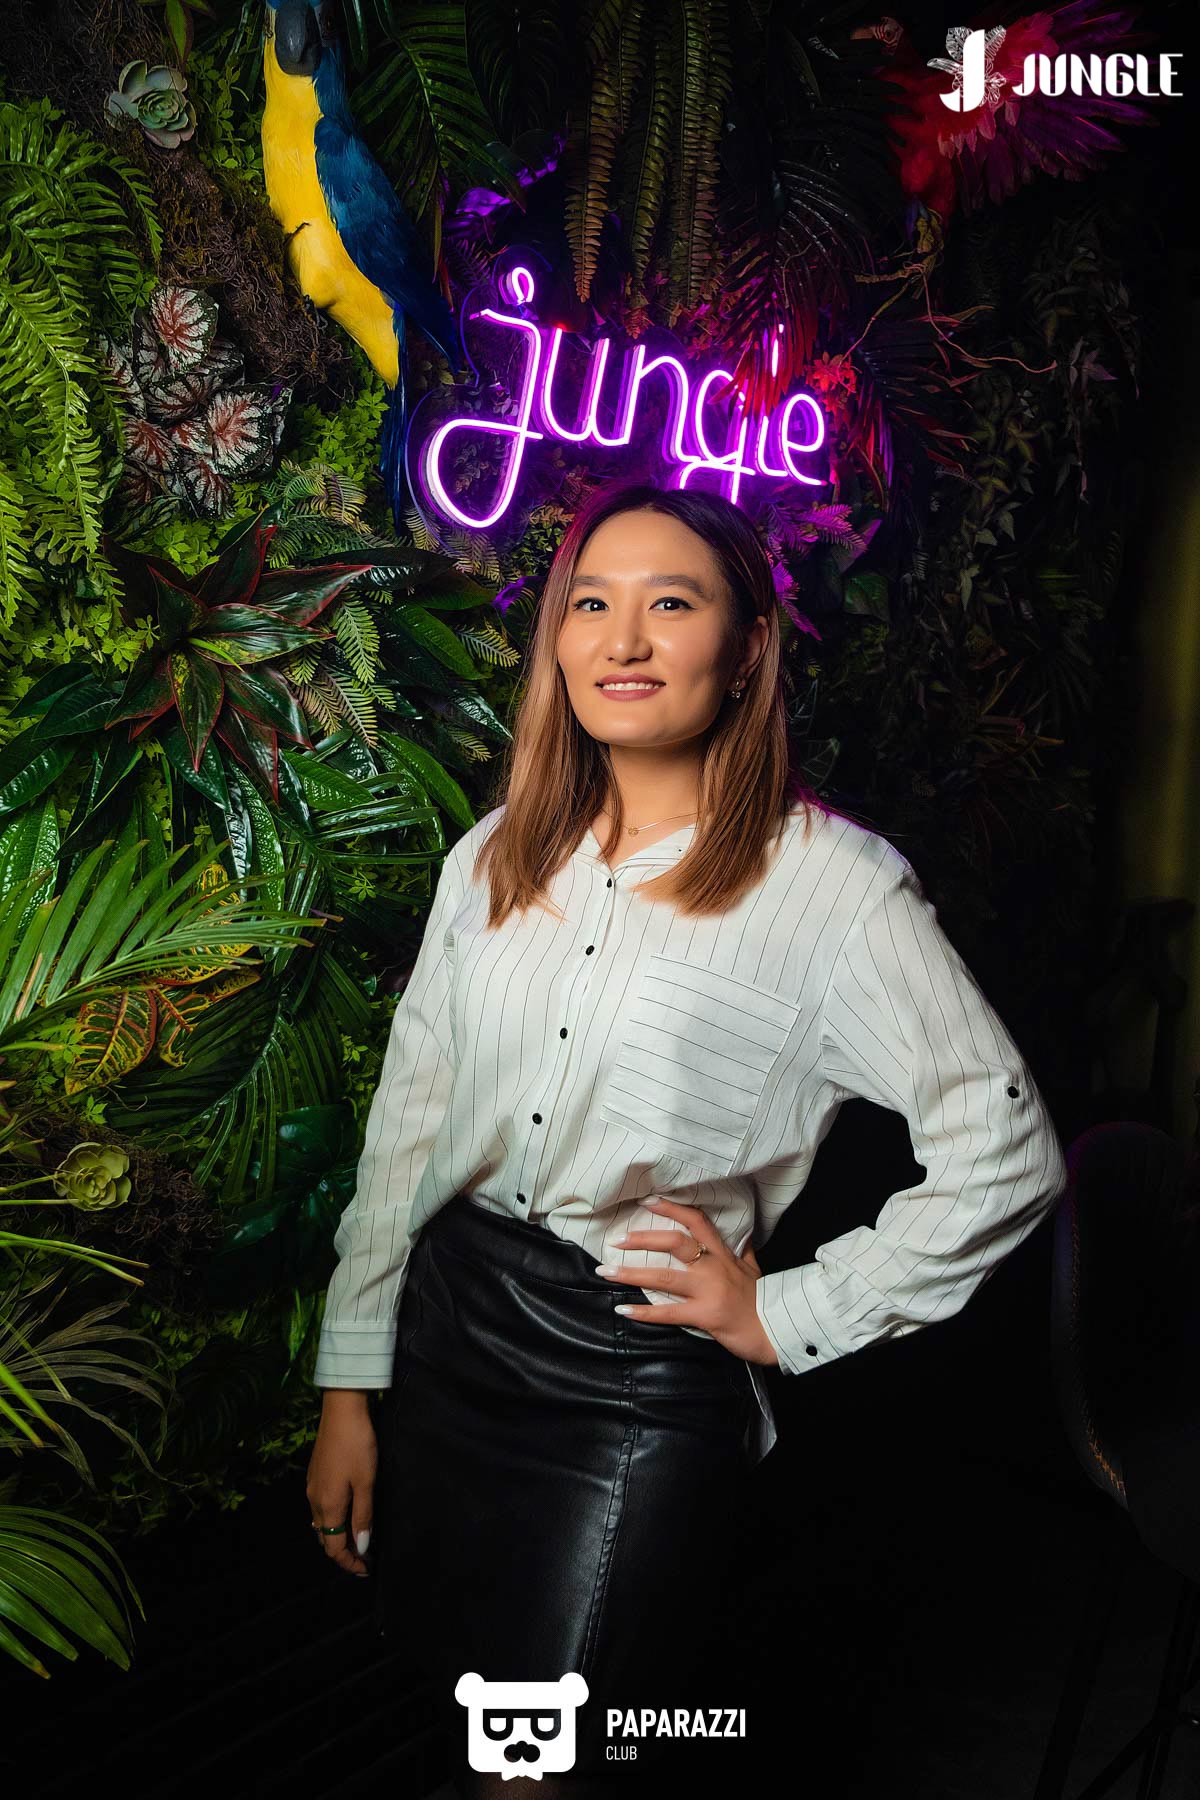 "Jungle"